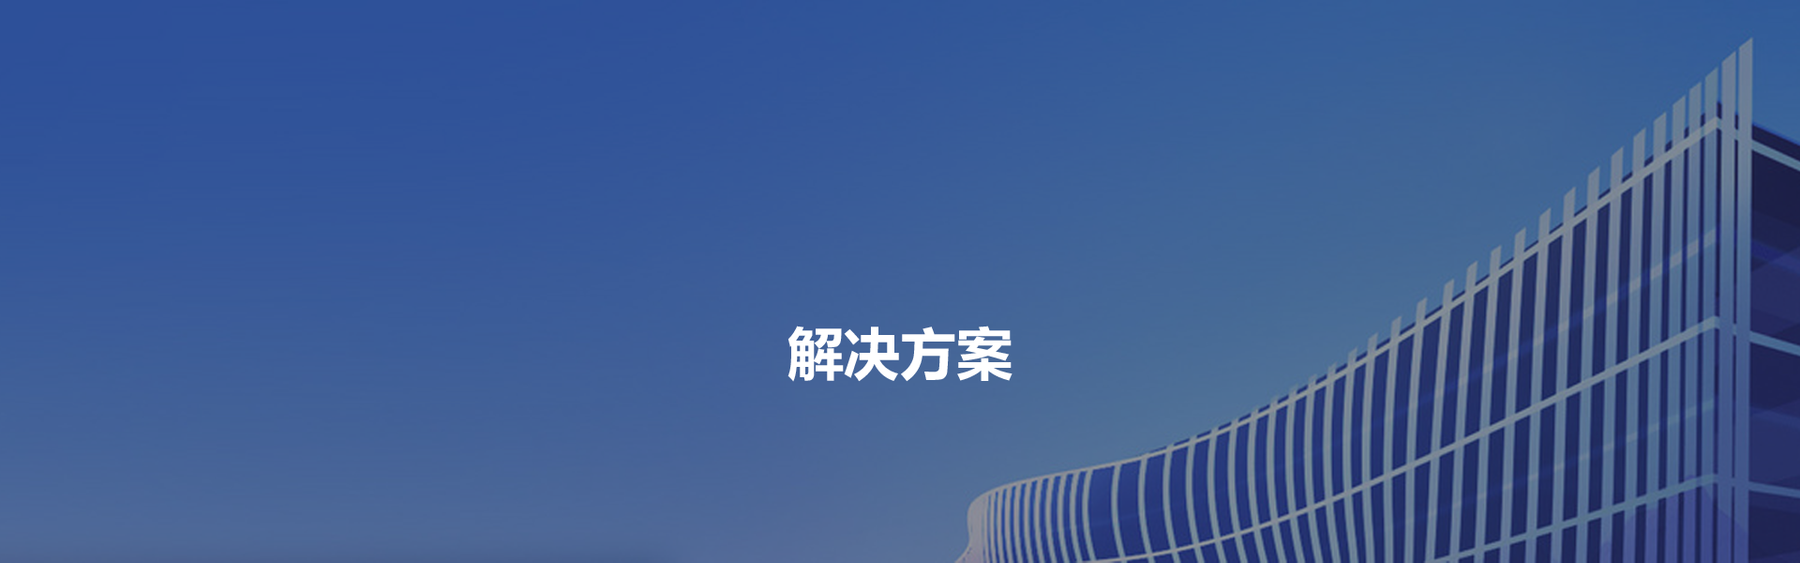 Z6尊龙·凯时(中国)-官方网站_活动581